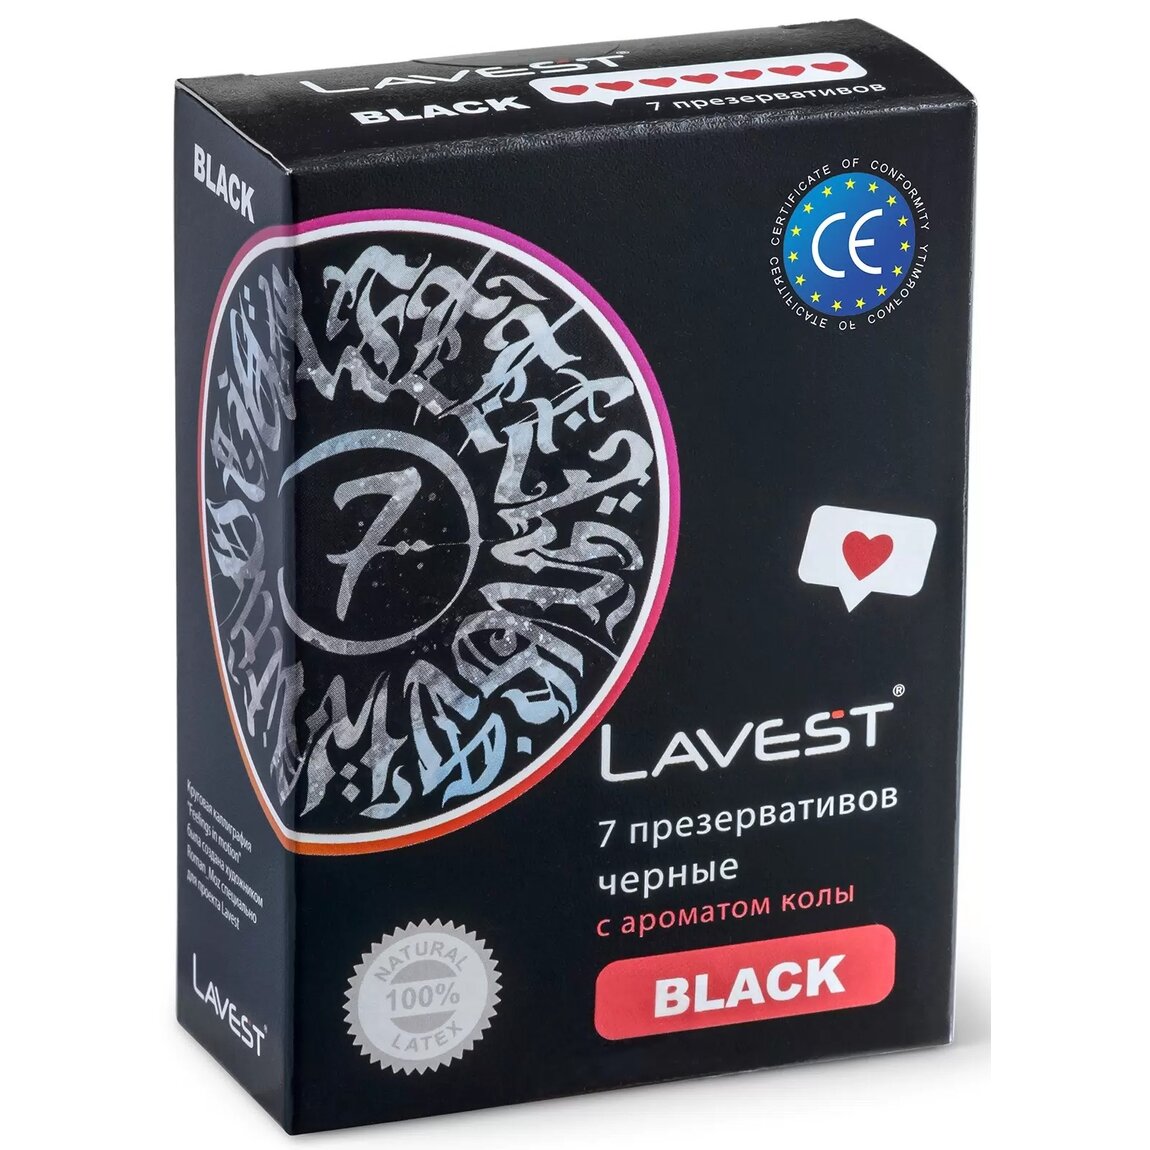 Презервативы Lavest Black с ароматом колы черные 7 шт.